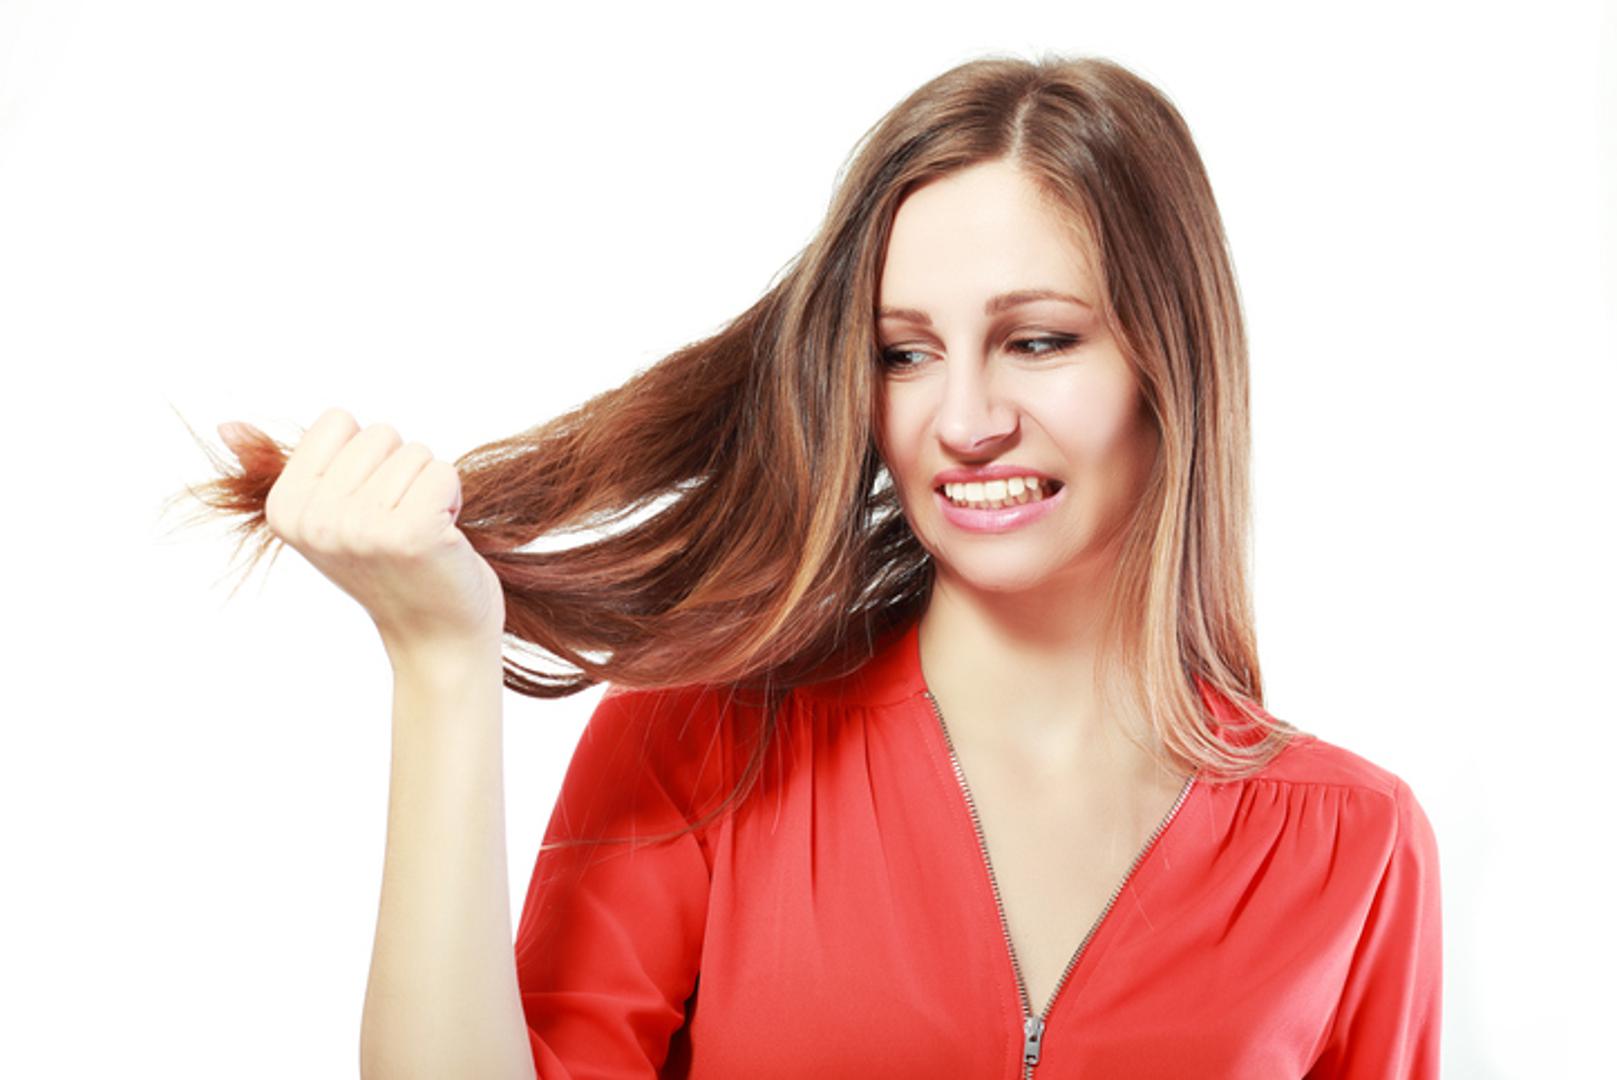 Izbjeljivanje/blajhanje kose- Ovo svakako nemojte raditi sami kod kuće jer možete trajno oštetiti kosu. 